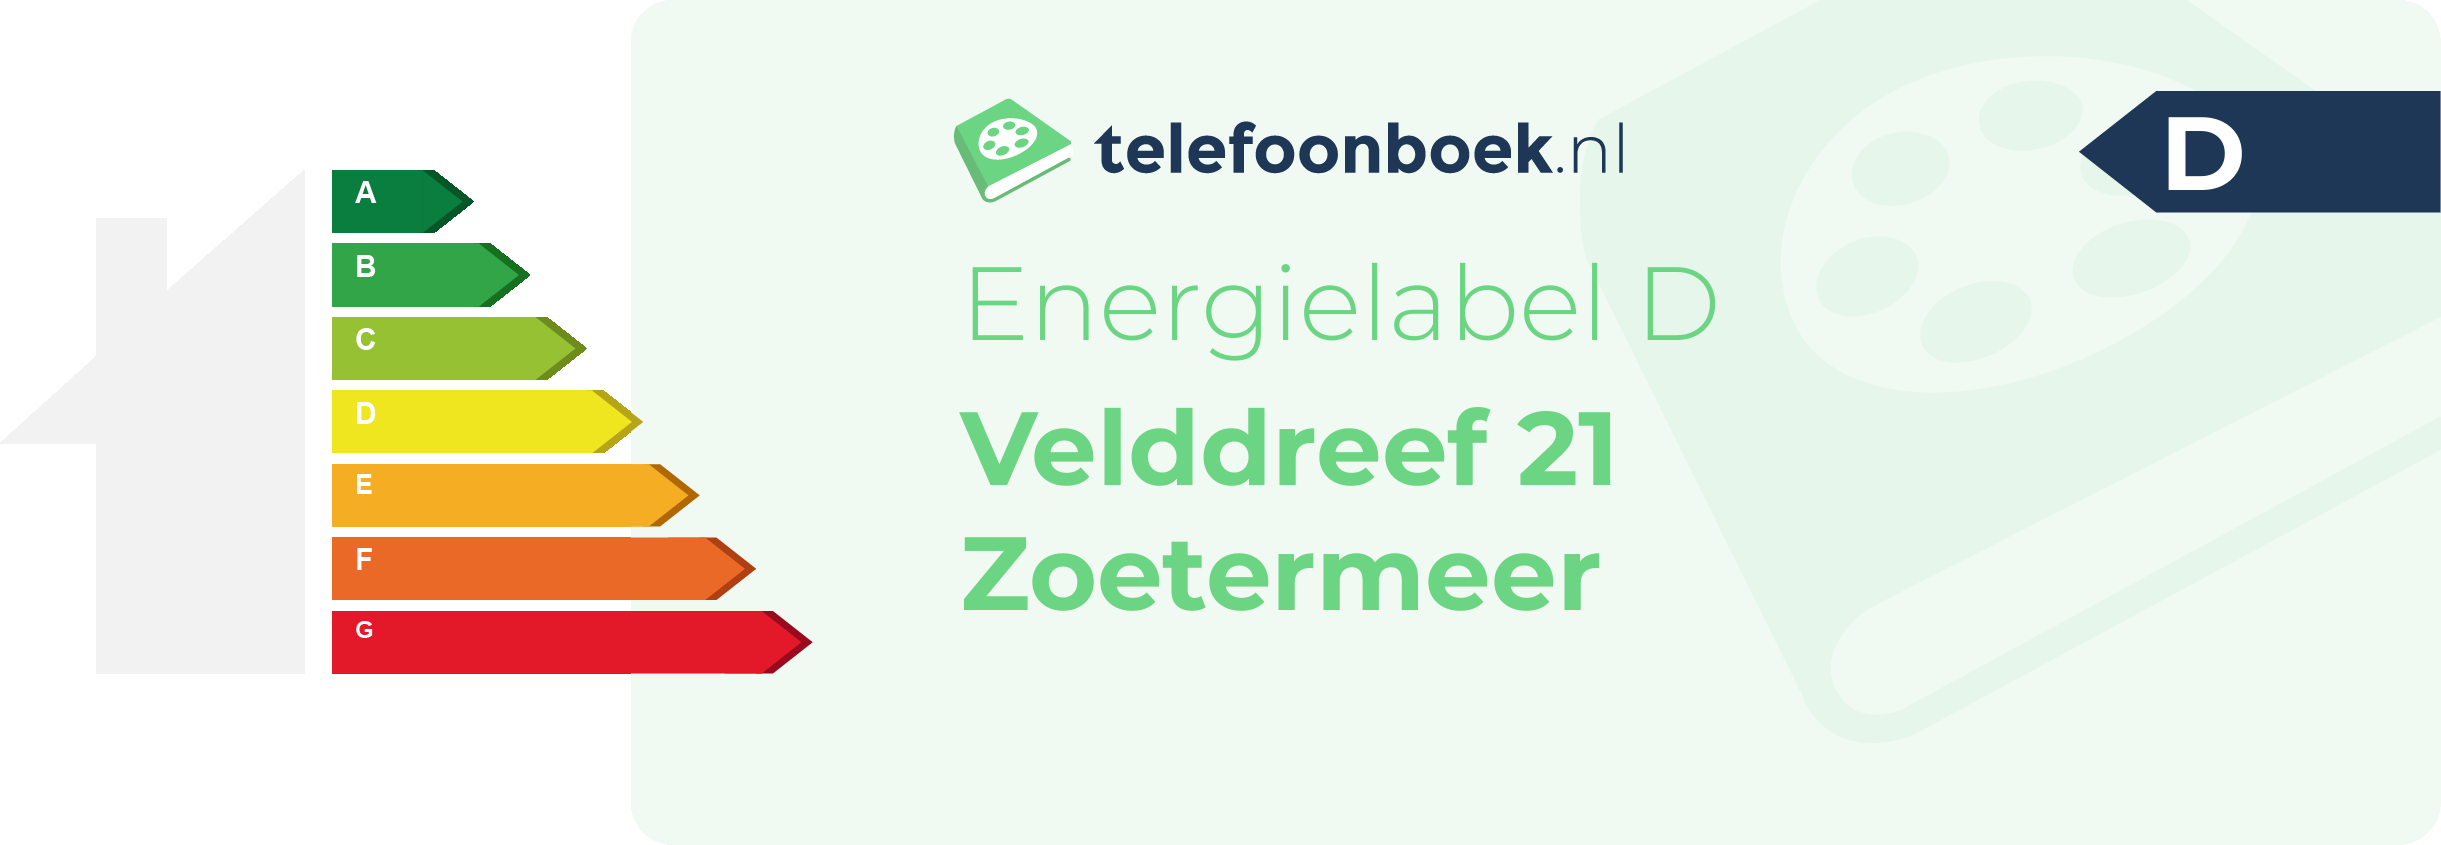 Energielabel Velddreef 21 Zoetermeer